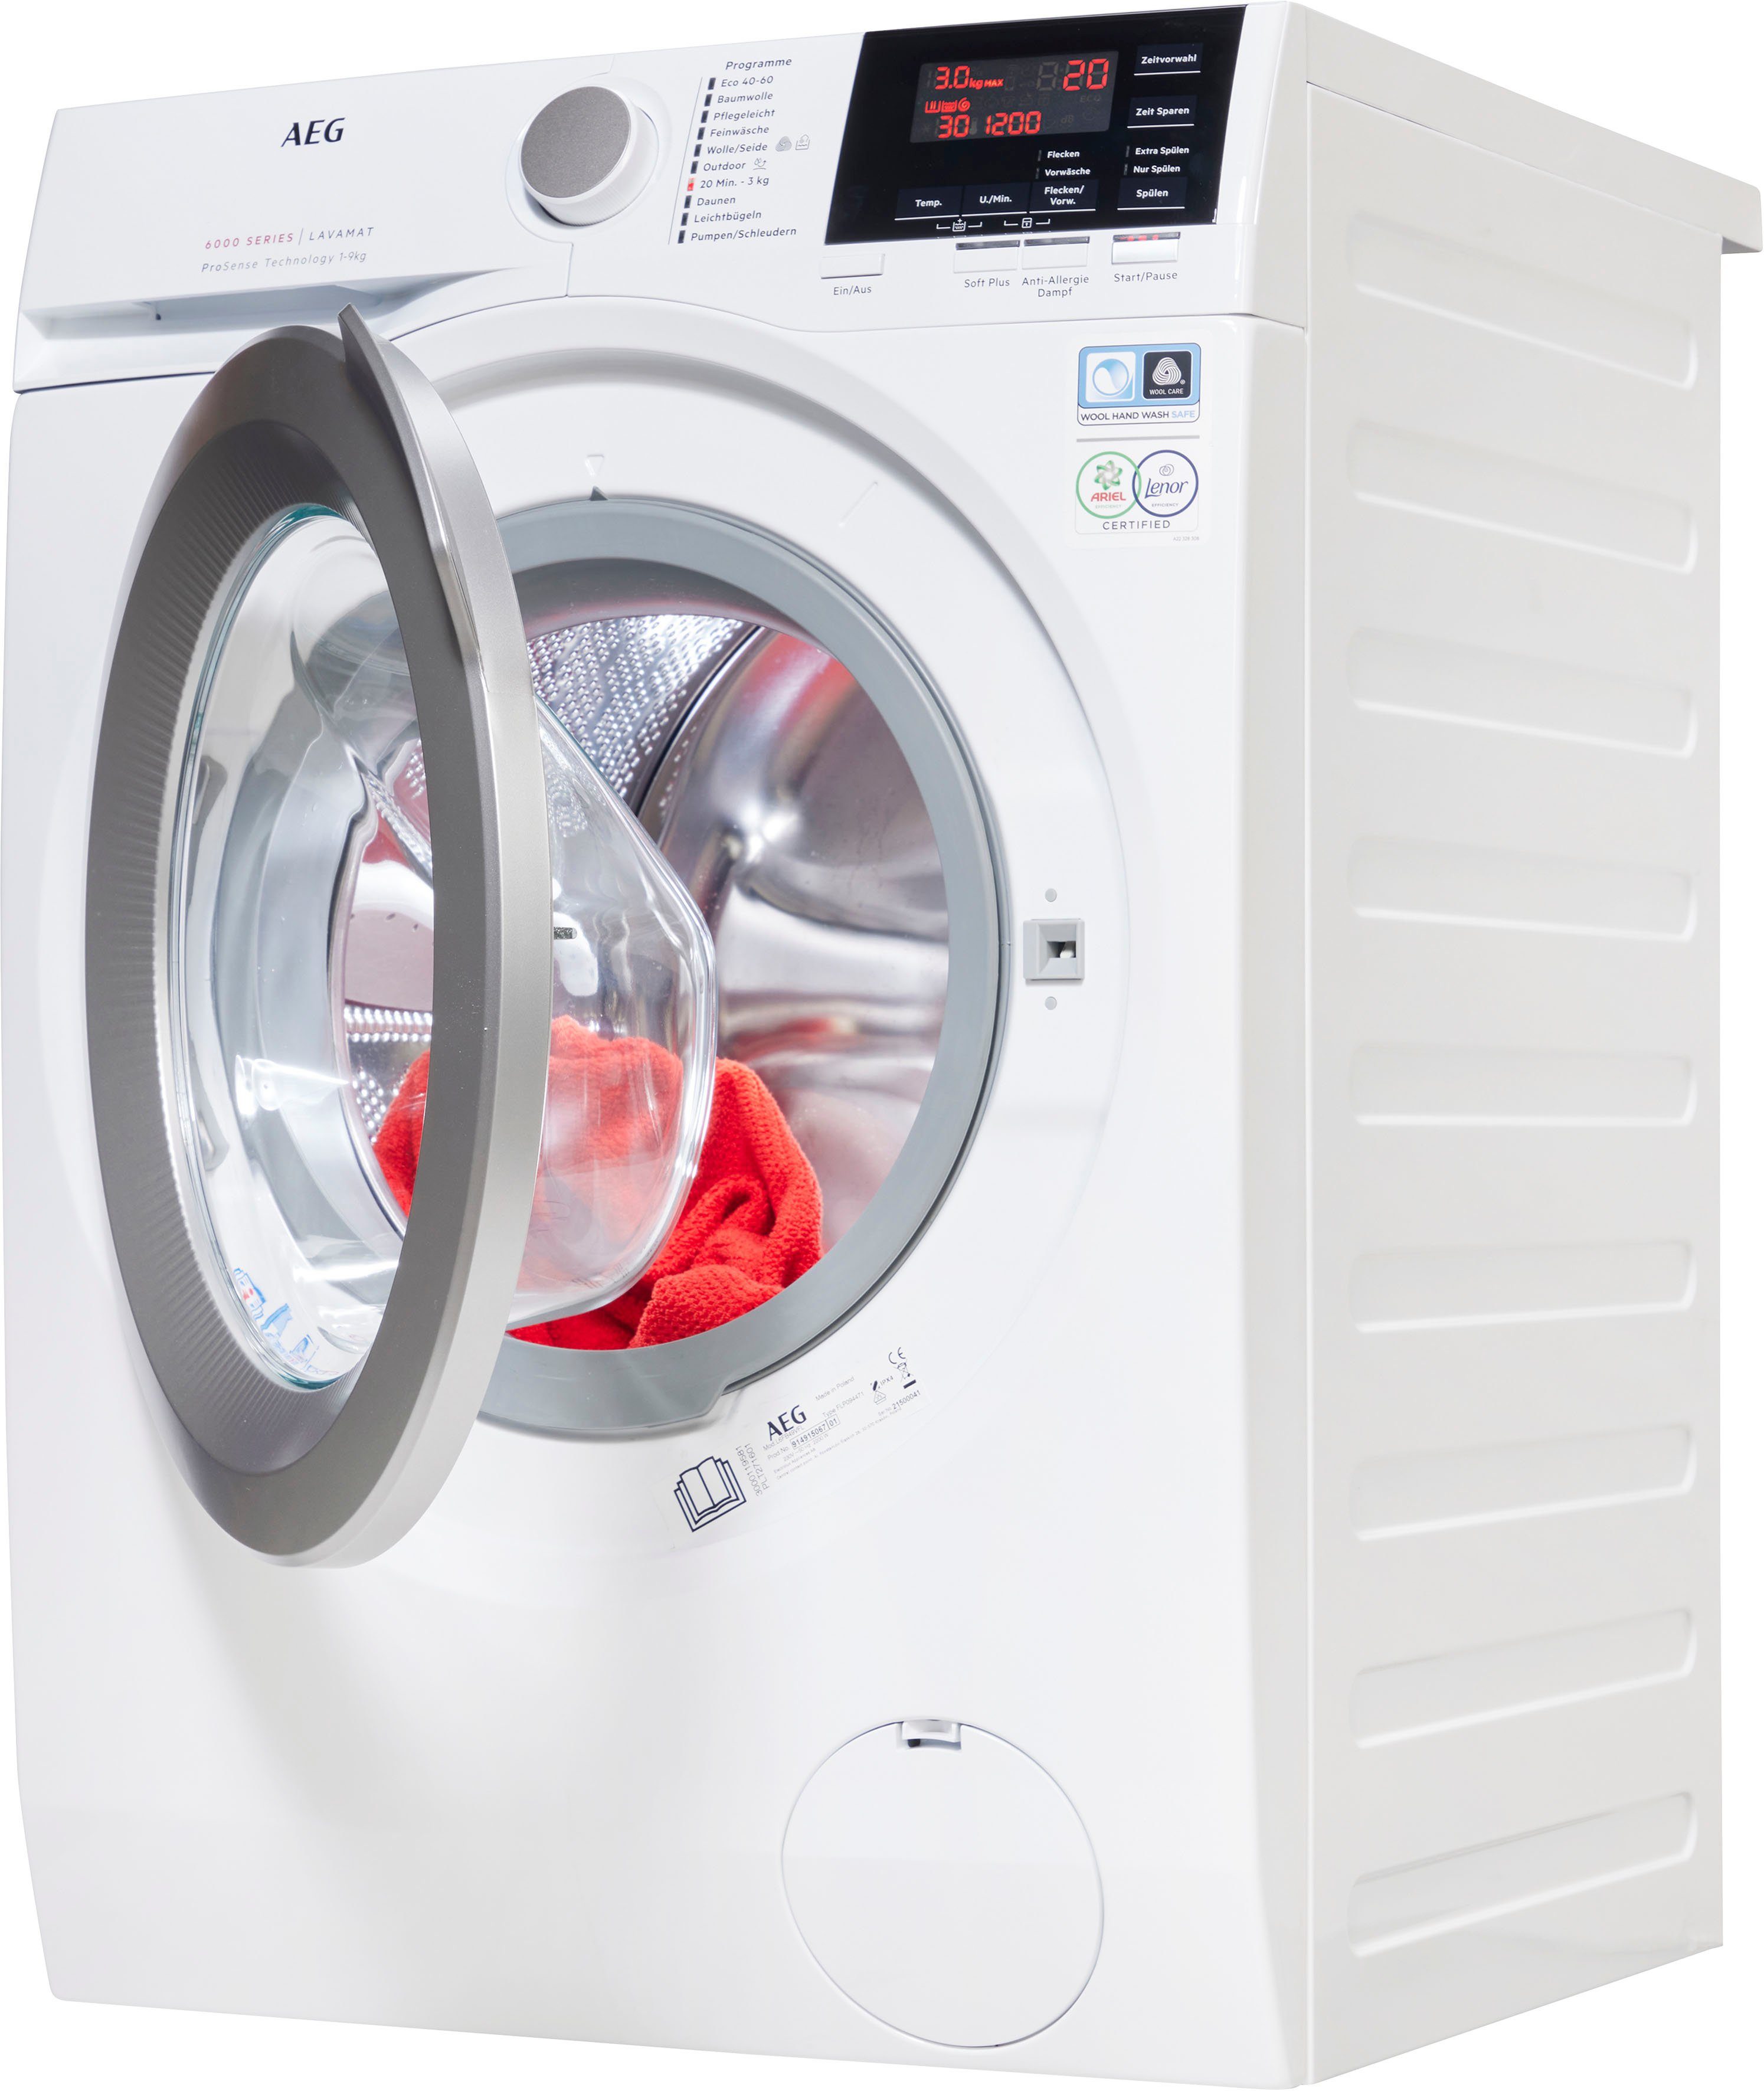 Dampf 1400 Anti-Allergie Programm 6000 U/min, kg, Hygiene-/ Waschmaschine 9 L6FB49VFL, Serie mit AEG